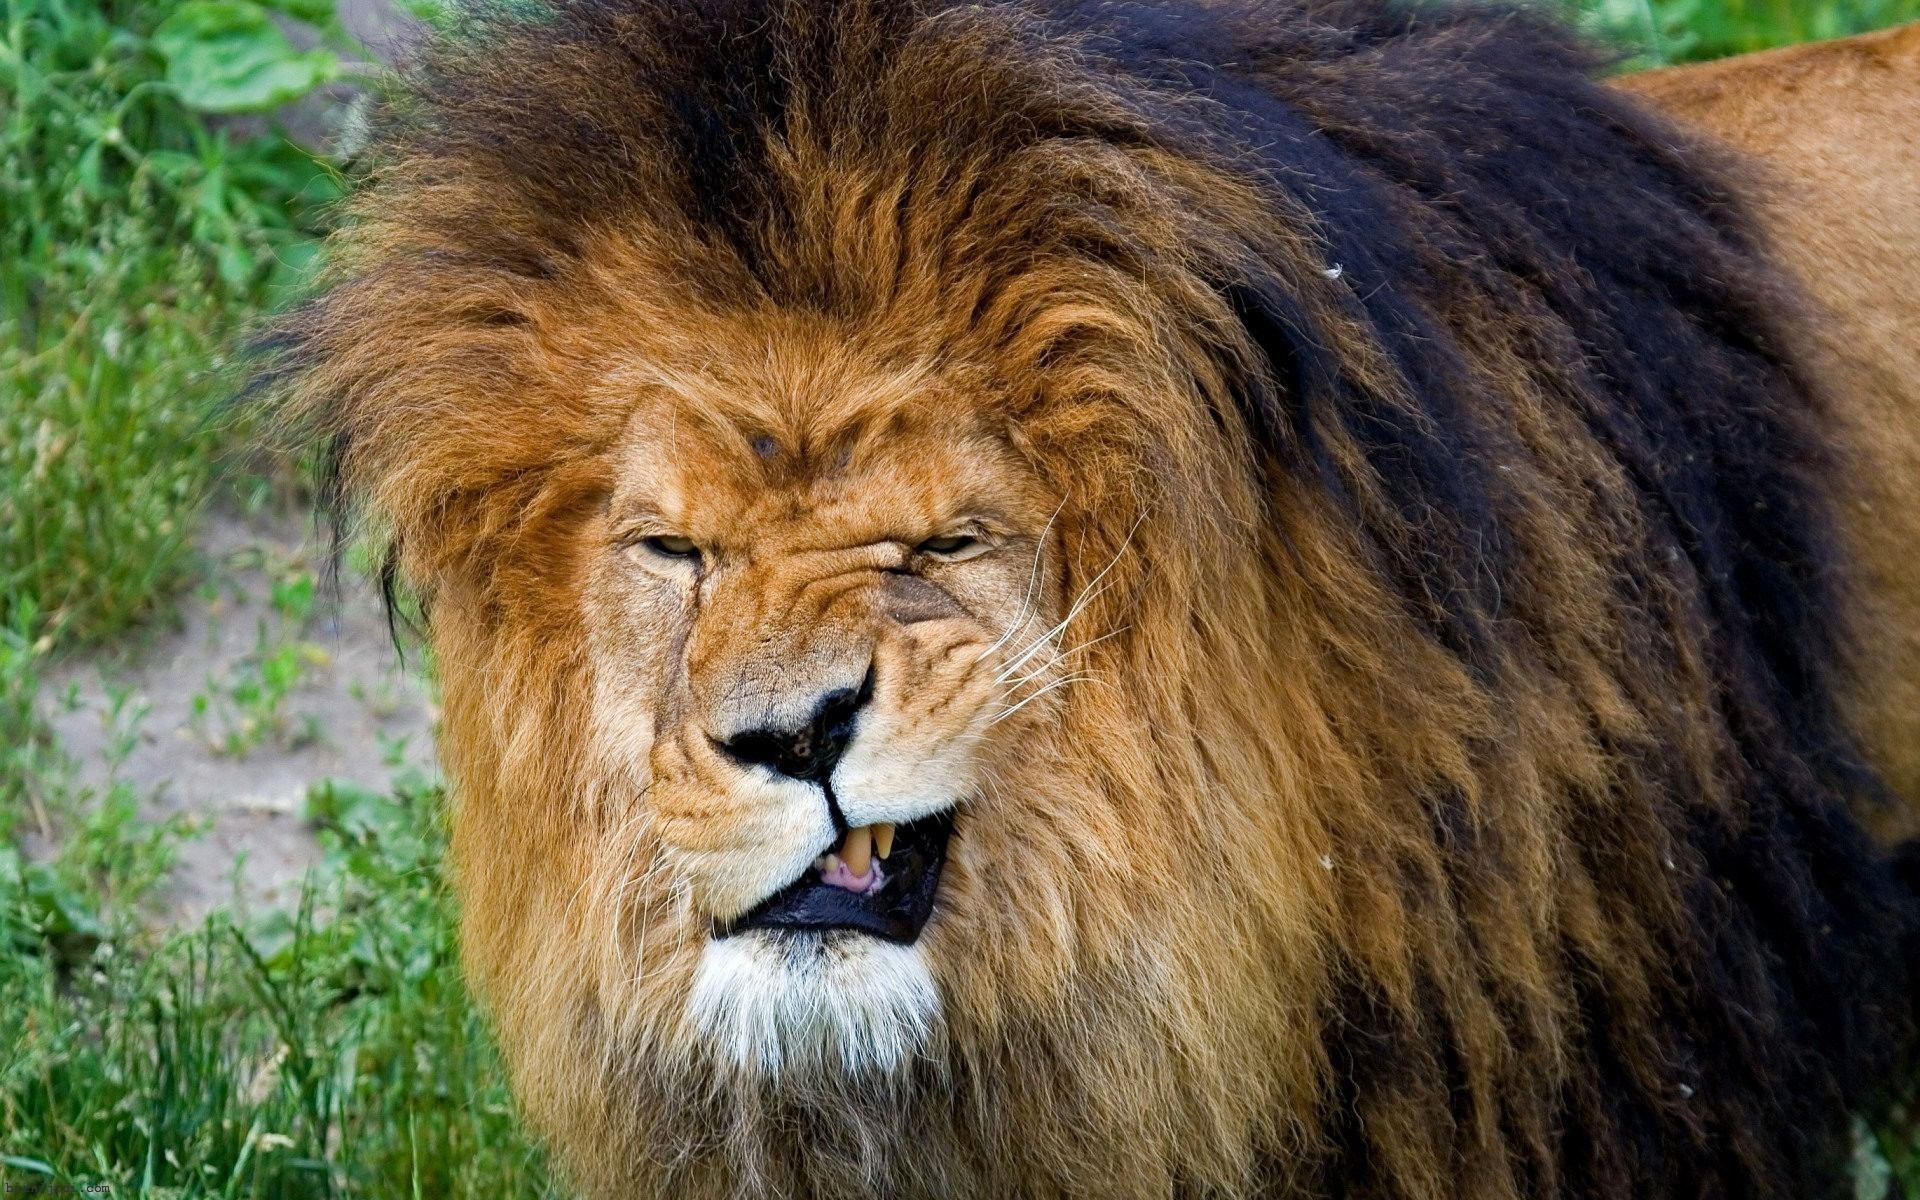 【克里米亚野生动物园】分享一下好玩儿的狮子照片 - 哔哩哔哩